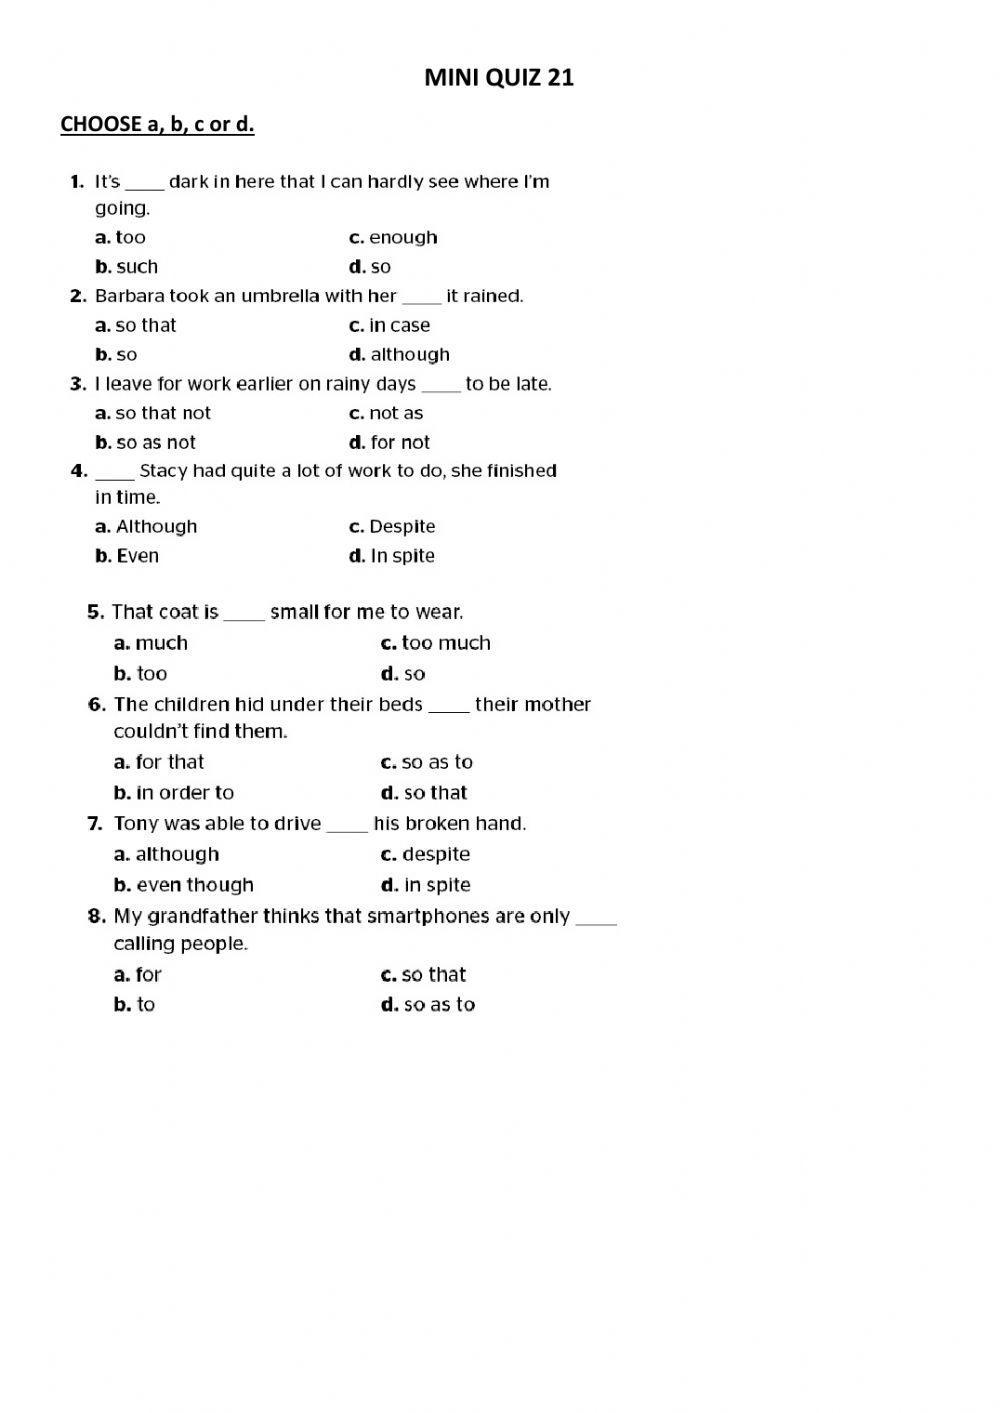 Grammar Videos Mini Quiz 21